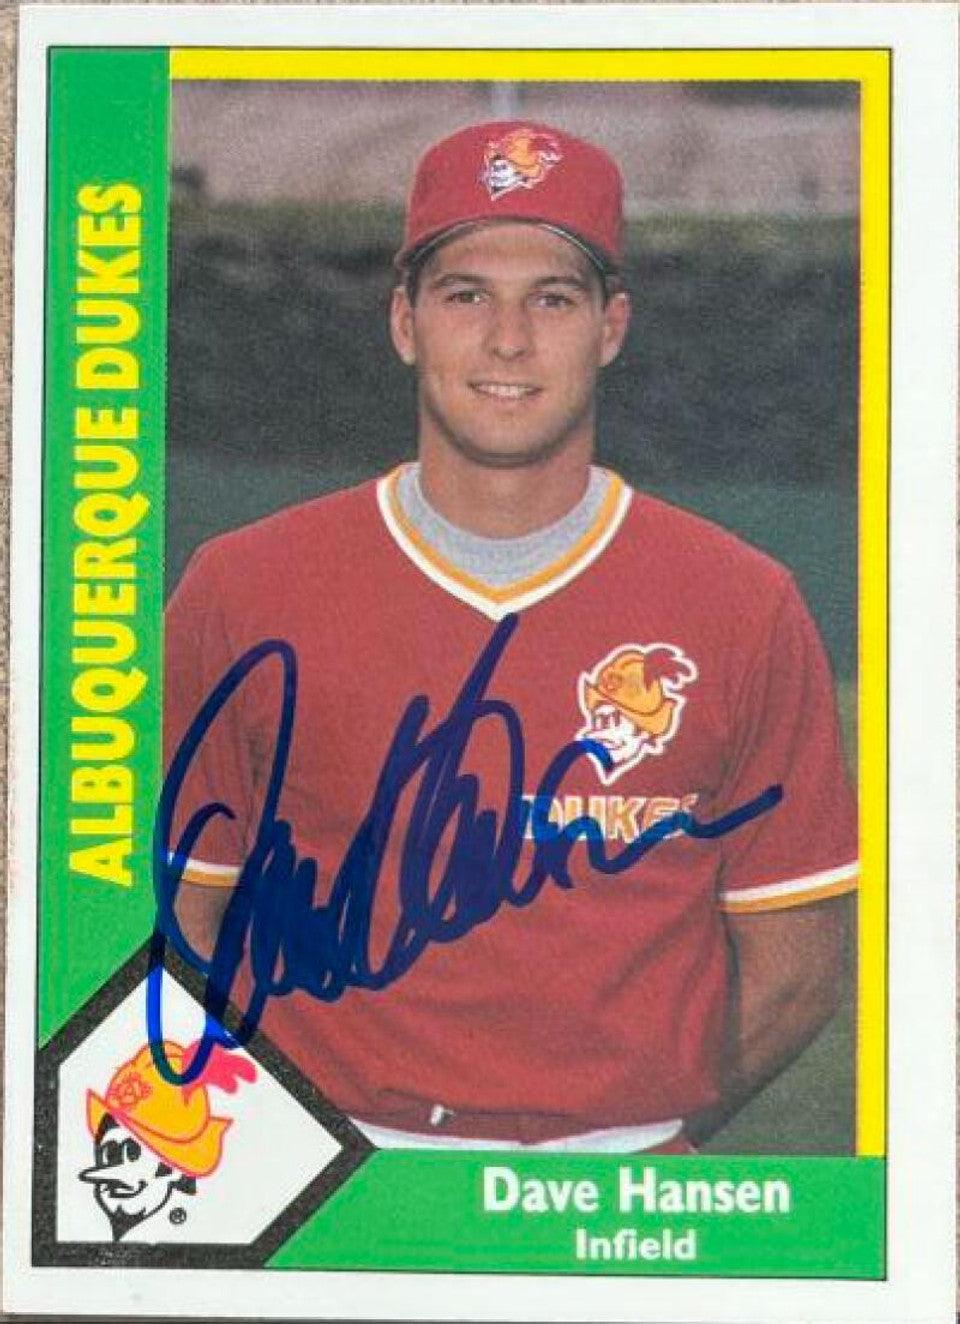 Dave Hansen Signed 1990 CMC Baseball Card - Albuquerque Dukes - PastPros